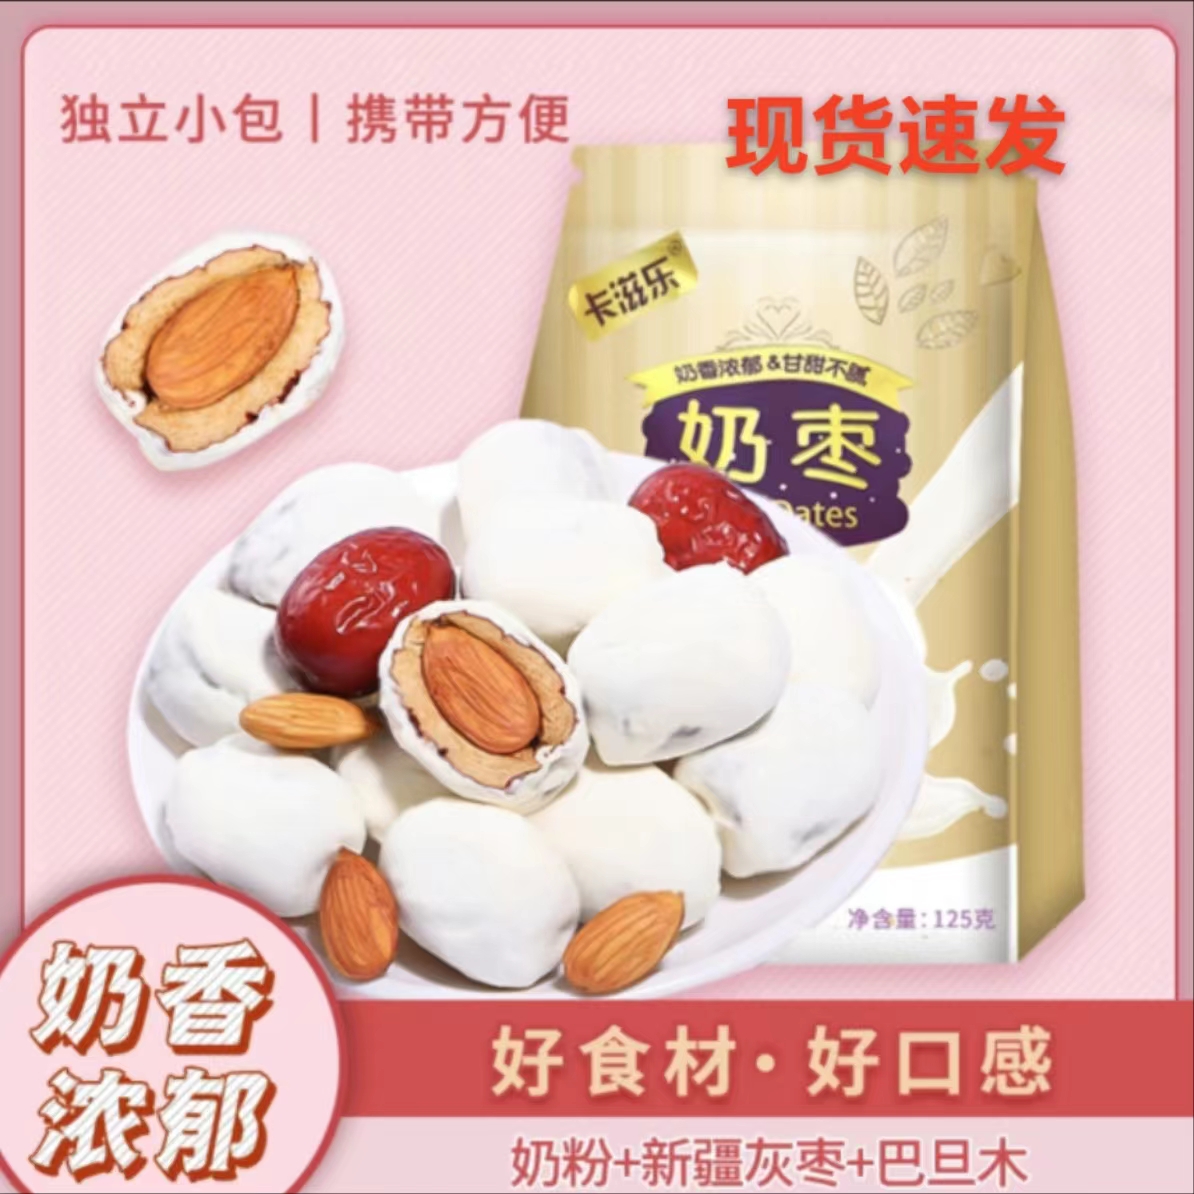 卡滋乐巴旦木奶枣125g甄选网红灰枣营养夹心奶香美味零食食用精选